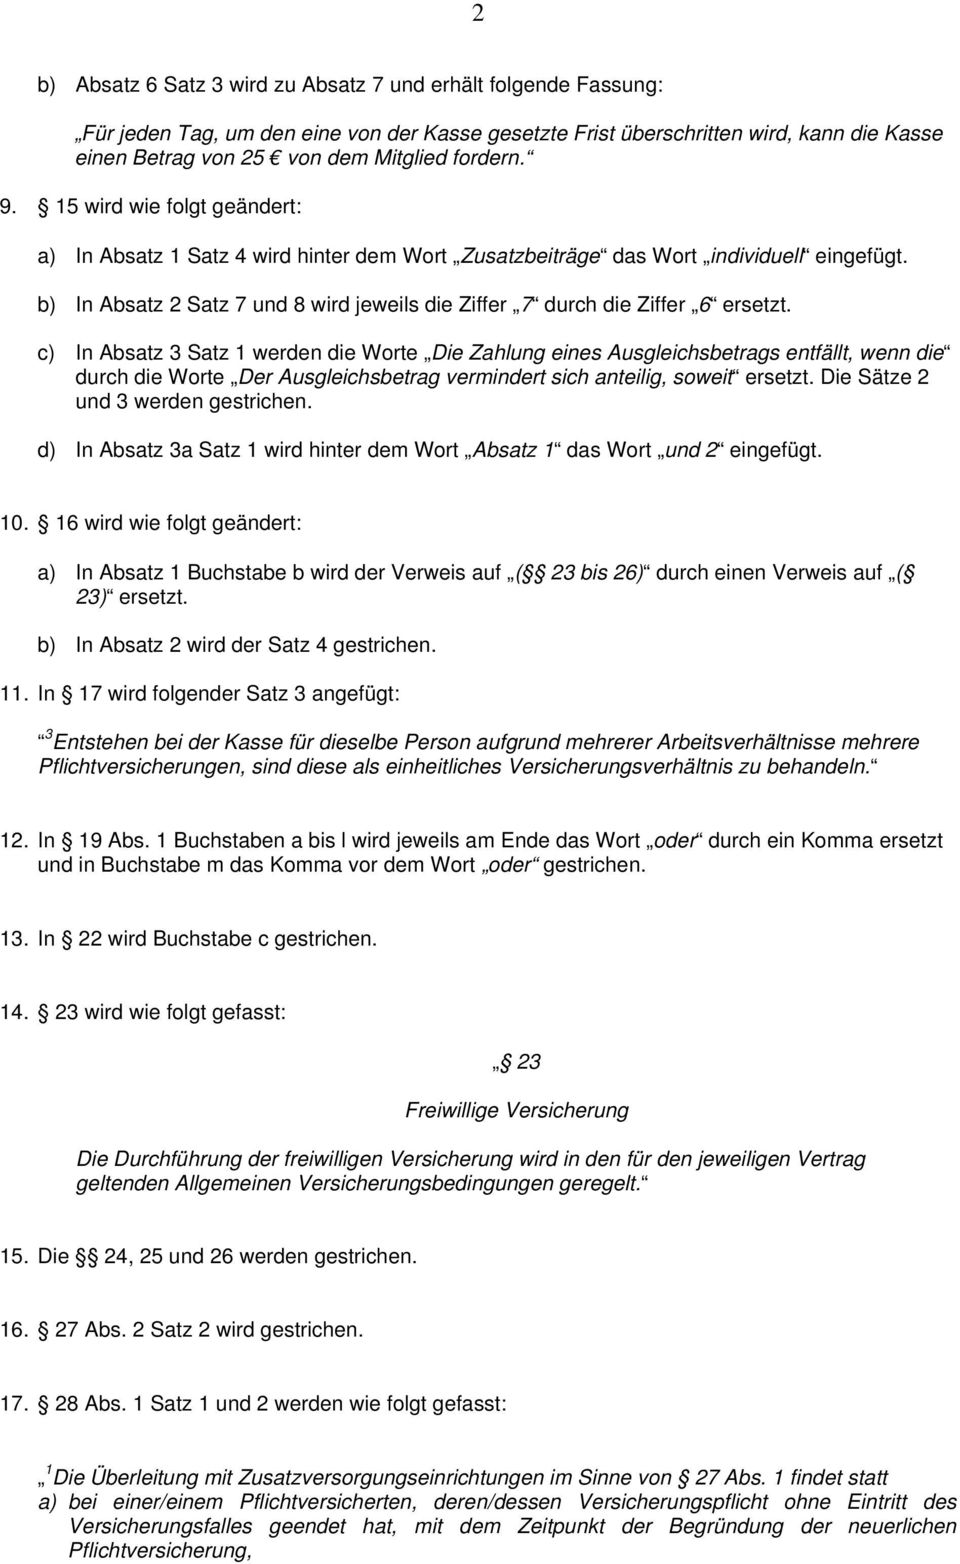 b) In Absatz 2 Satz 7 und 8 wird jeweils die Ziffer 7 durch die Ziffer 6 ersetzt.